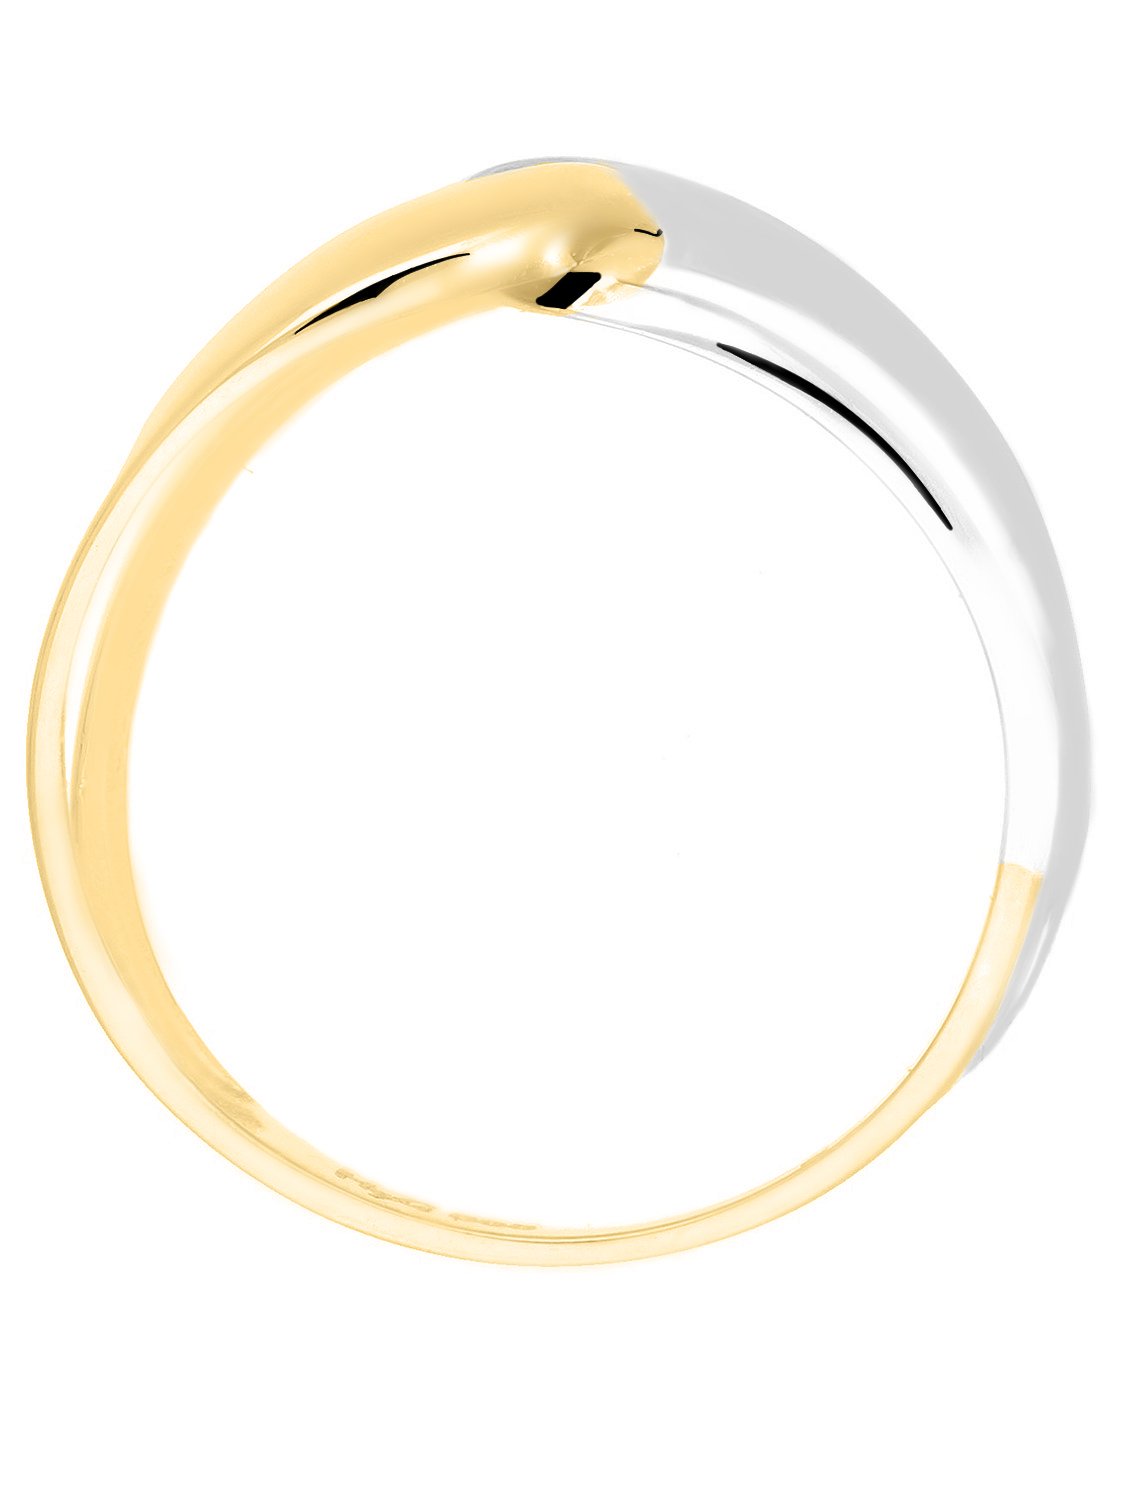 Illos - Ring ohne Stein Gelbgold Weißgold - Größe 52